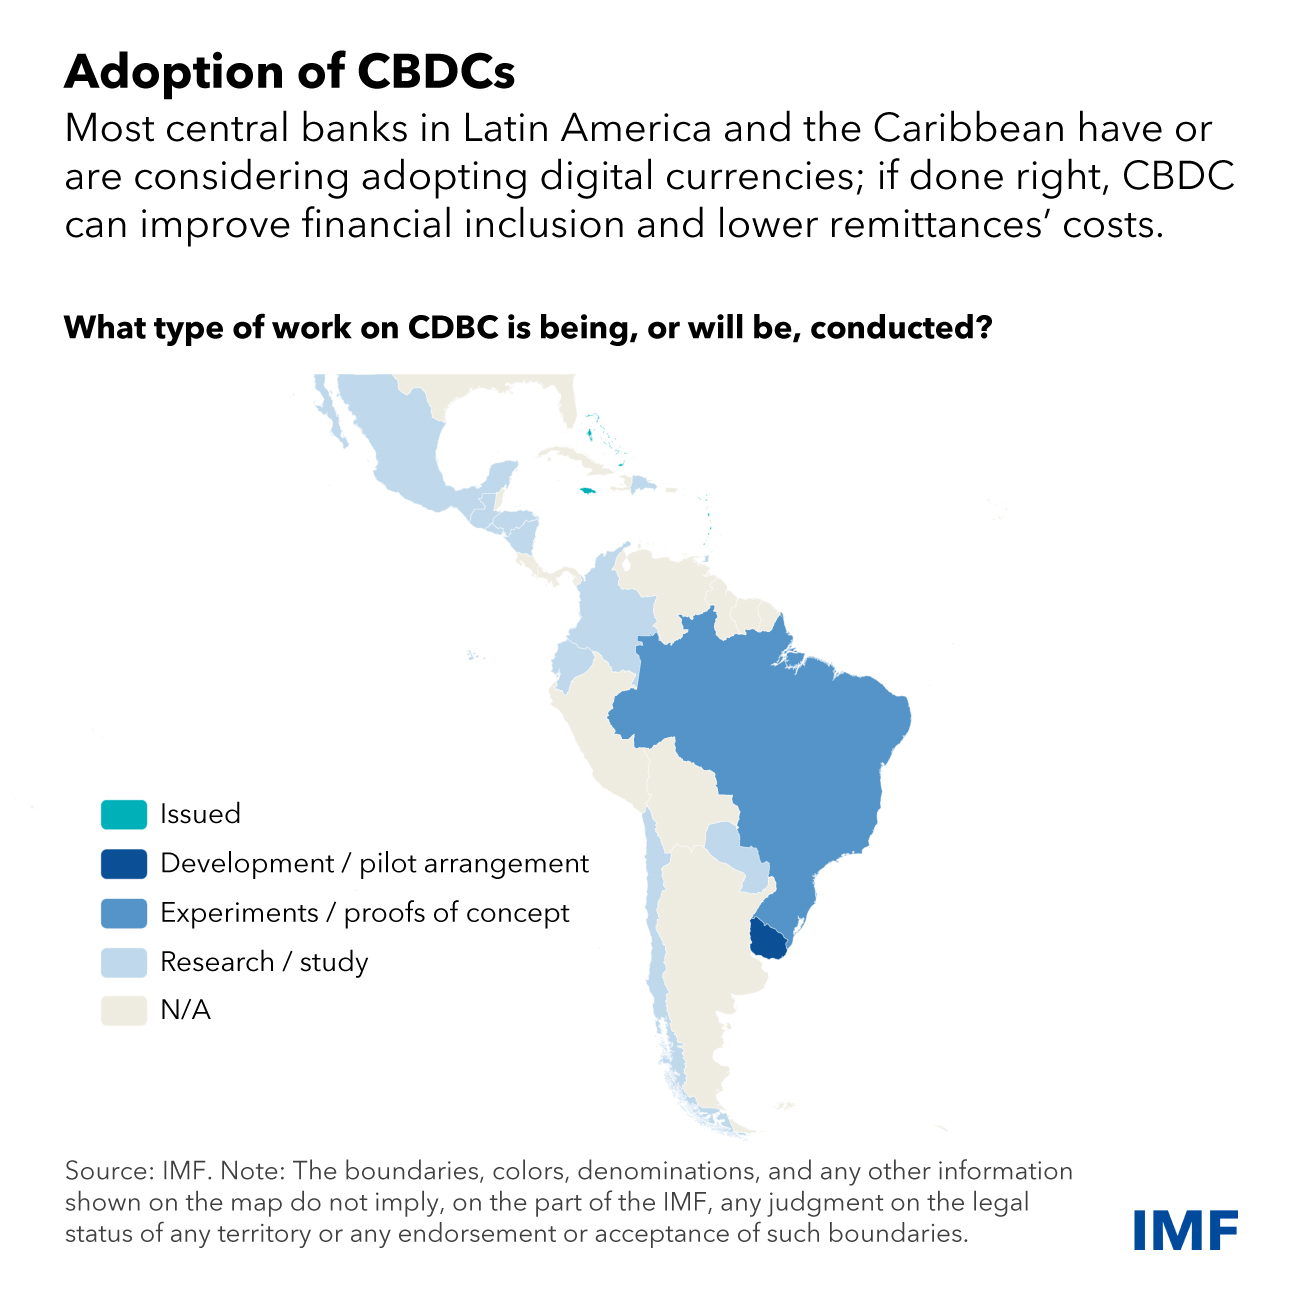 El interés en las monedas digitales de los bancos centrales aumenta en América Latina y el Caribe mientras que el uso de criptomonedas varía